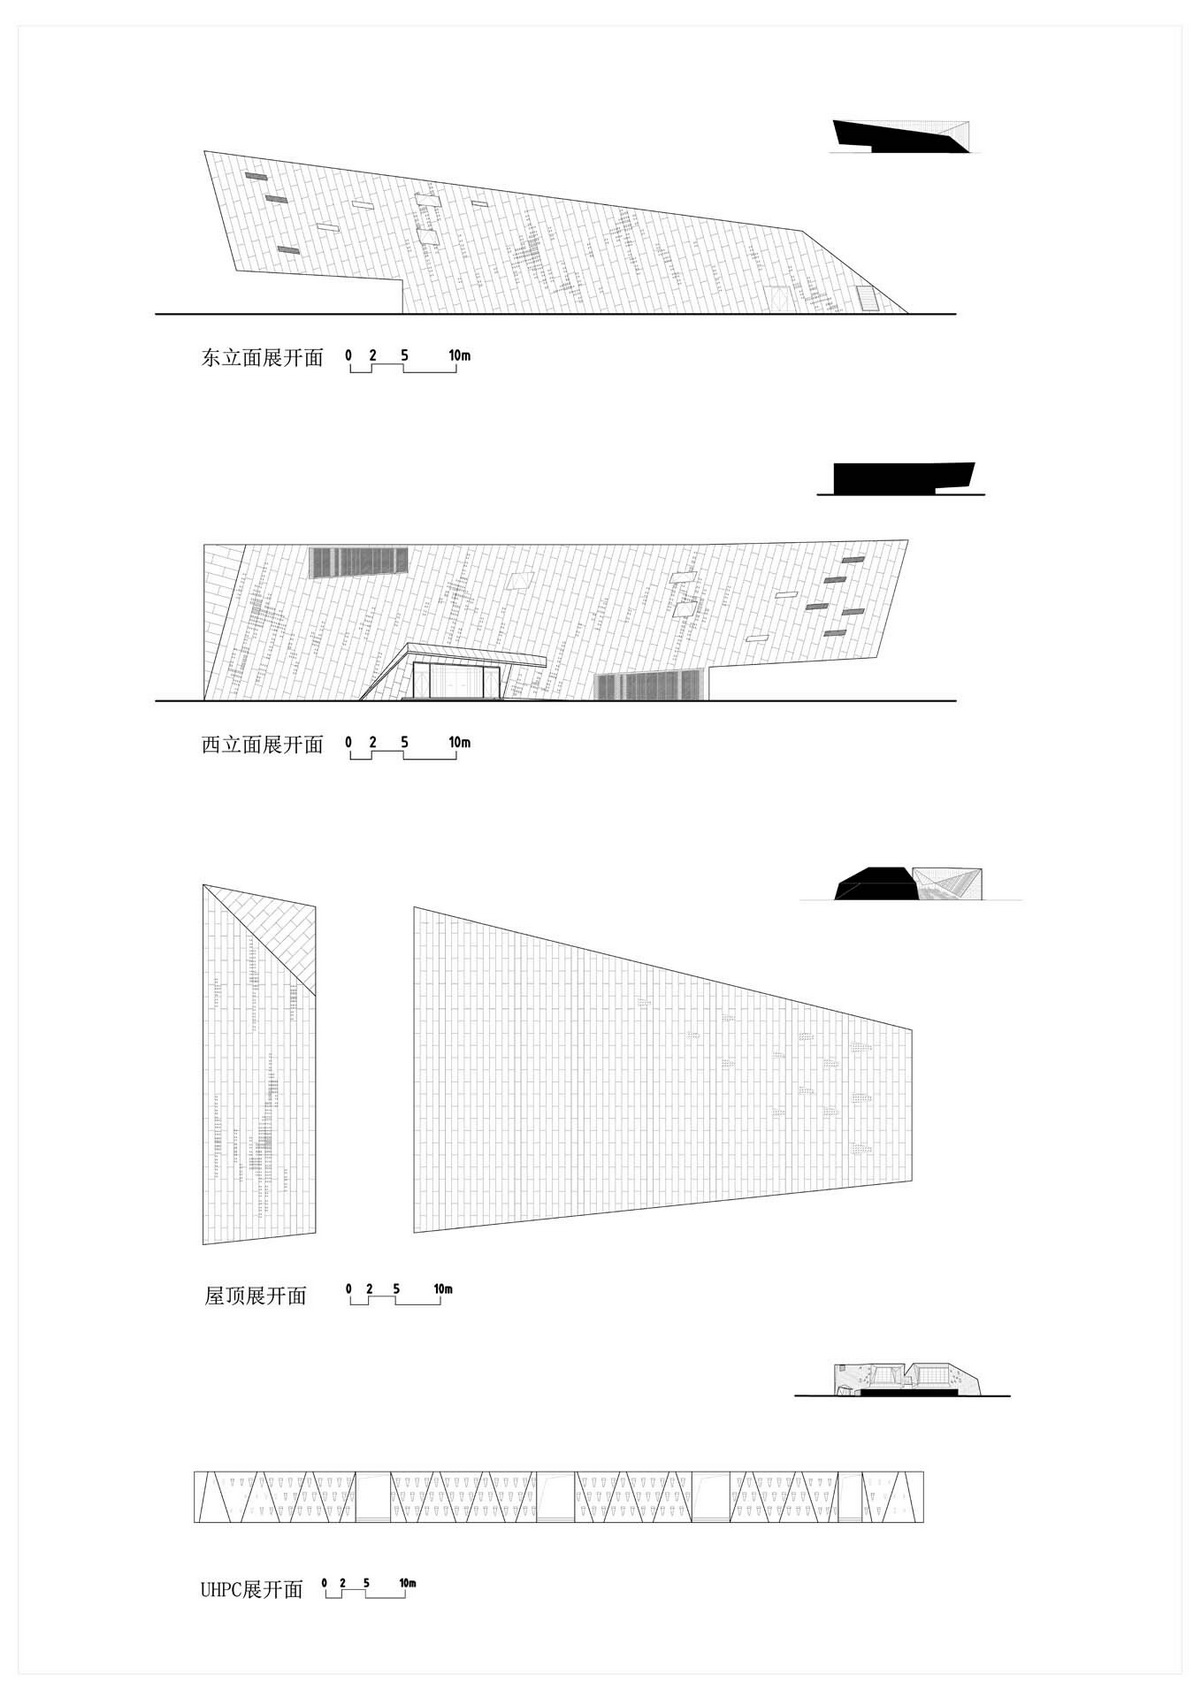 南京 渡江胜利公园 建筑设计 / 南大设计院周凌工作室